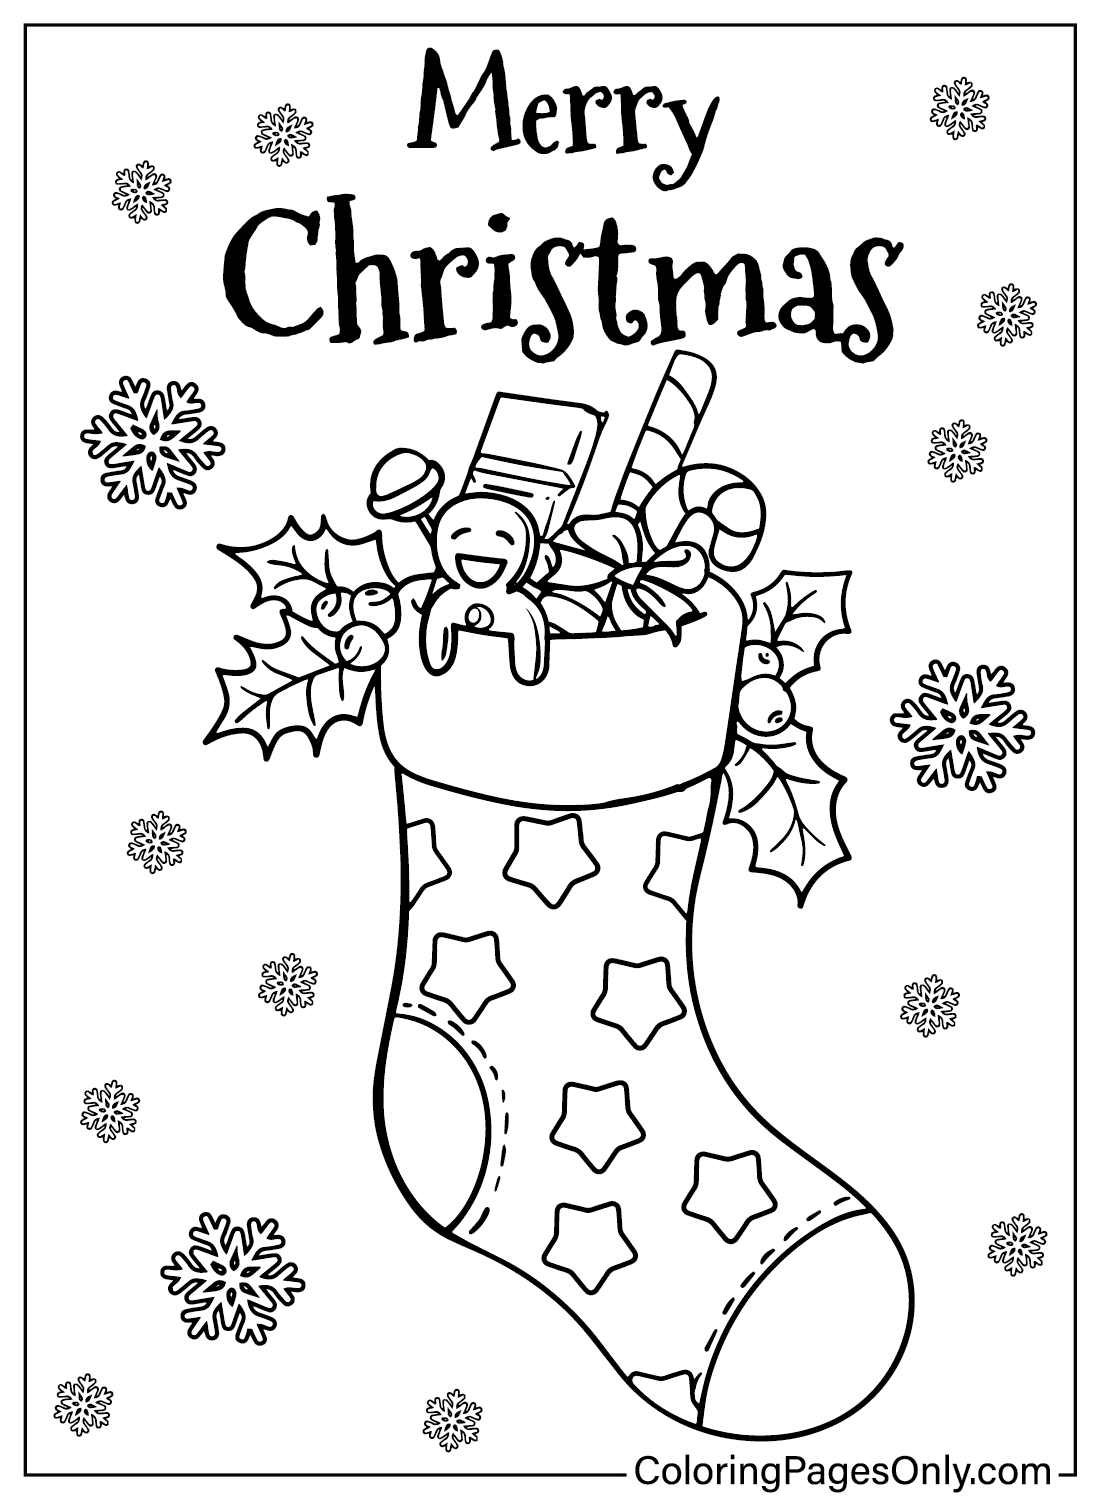 صور جوارب عيد الميلاد للتلوين من جوارب عيد الميلاد